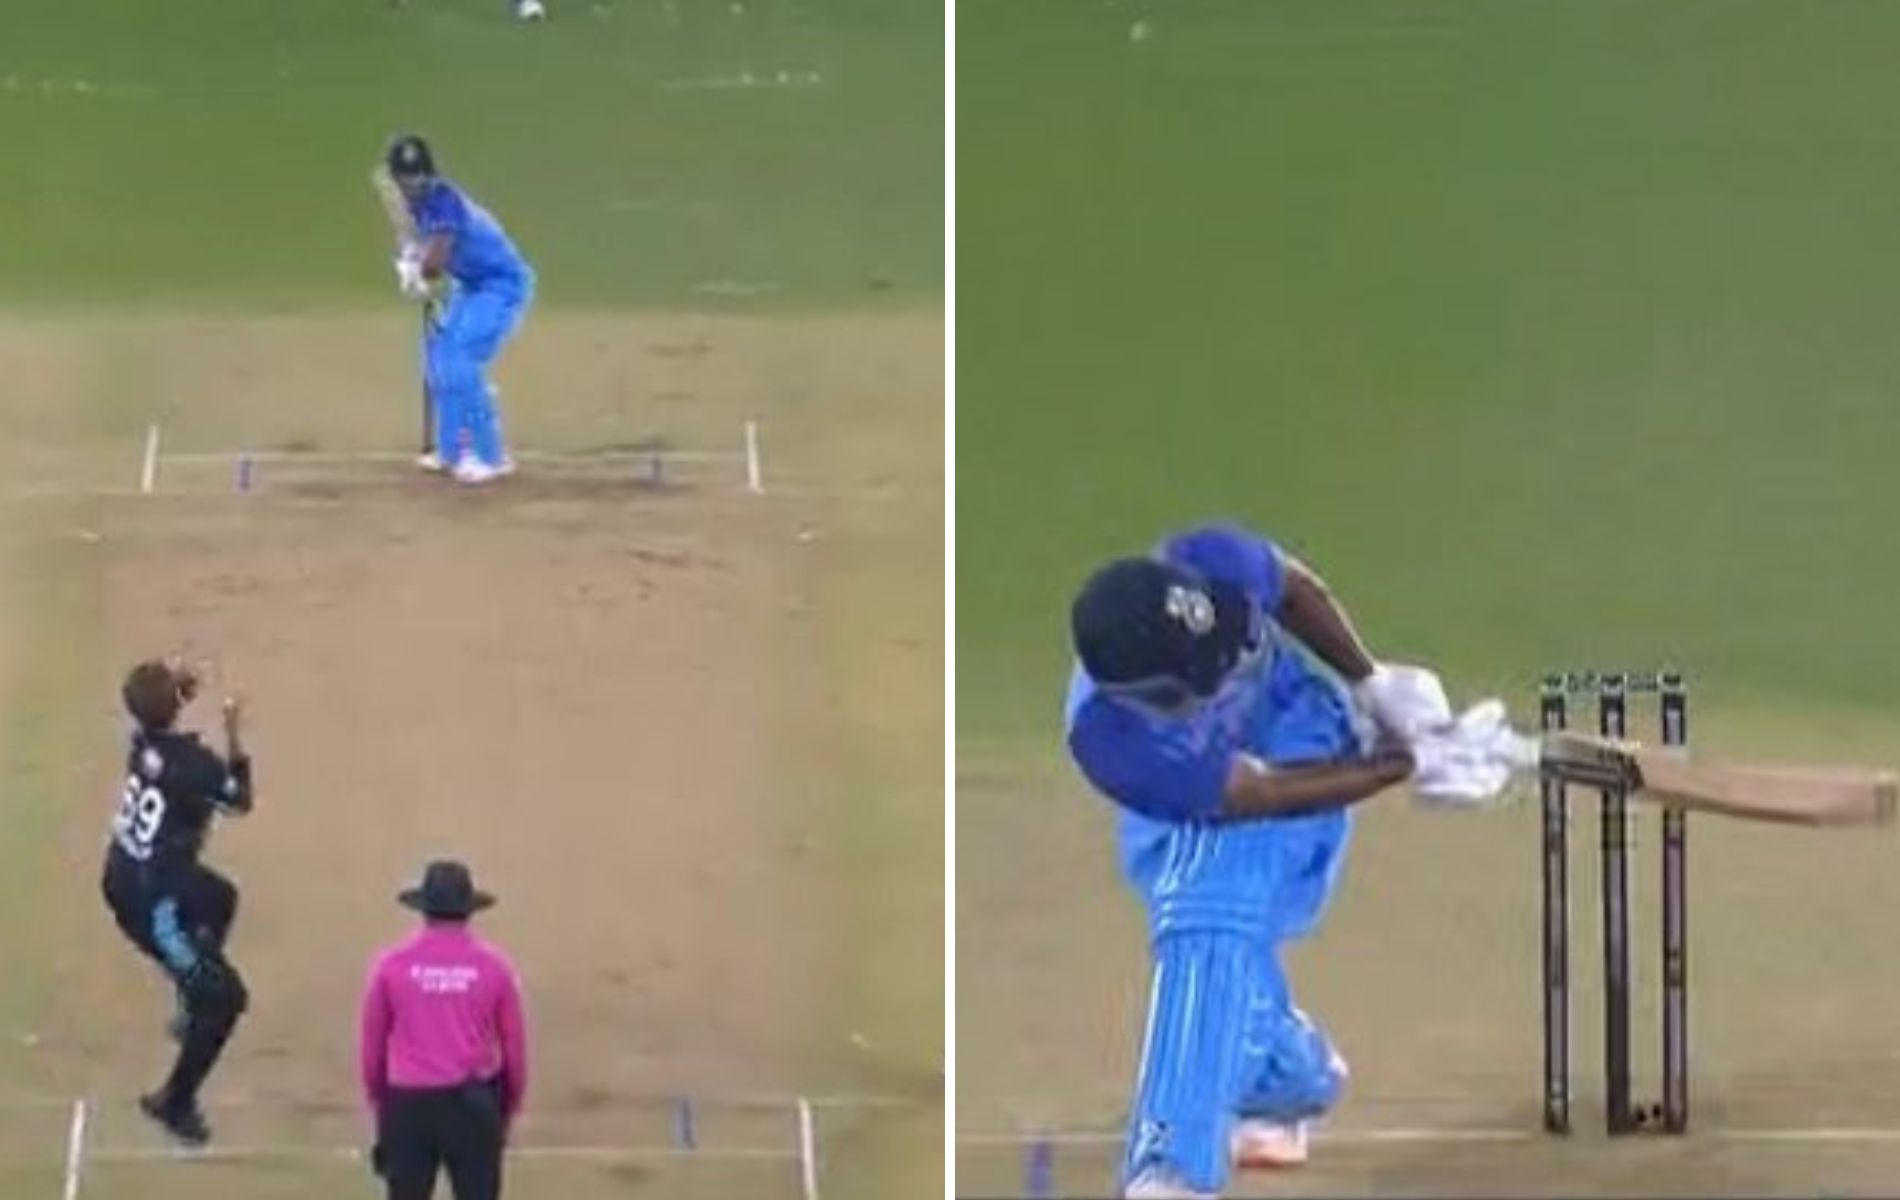 Rahul Tripathi scored 44 runs off 22 balls in IND vs NZ 3rd T20I. (Pics: BCCI)